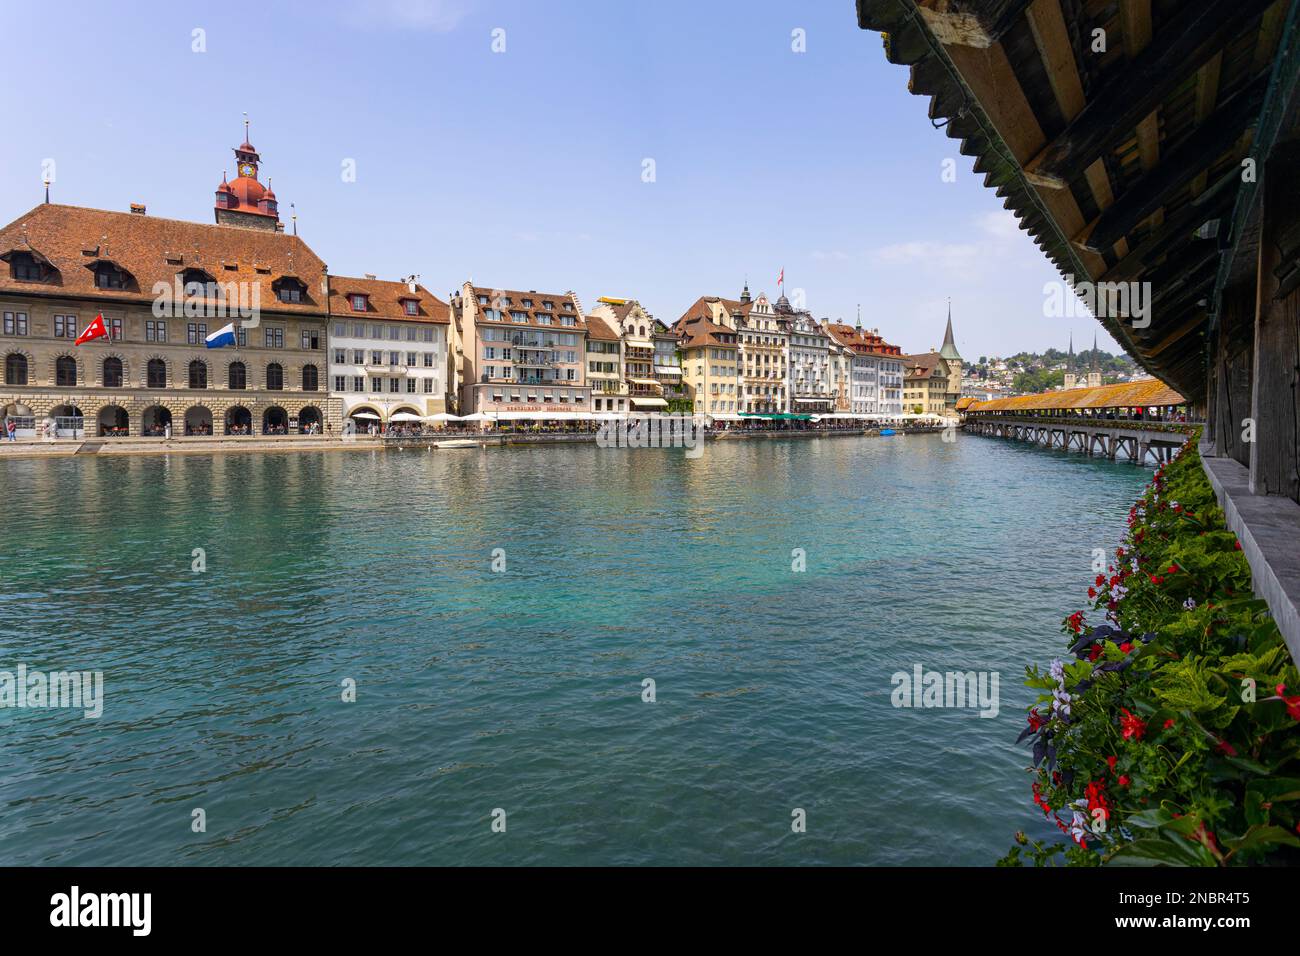 LUZERN, SCHWEIZ, 21. JUNI 2022 - Blick auf die verwundete überdachte Kapellbrücke am Fluss Reuss im Stadtzentrum von Luzern, Schweiz Stockfoto